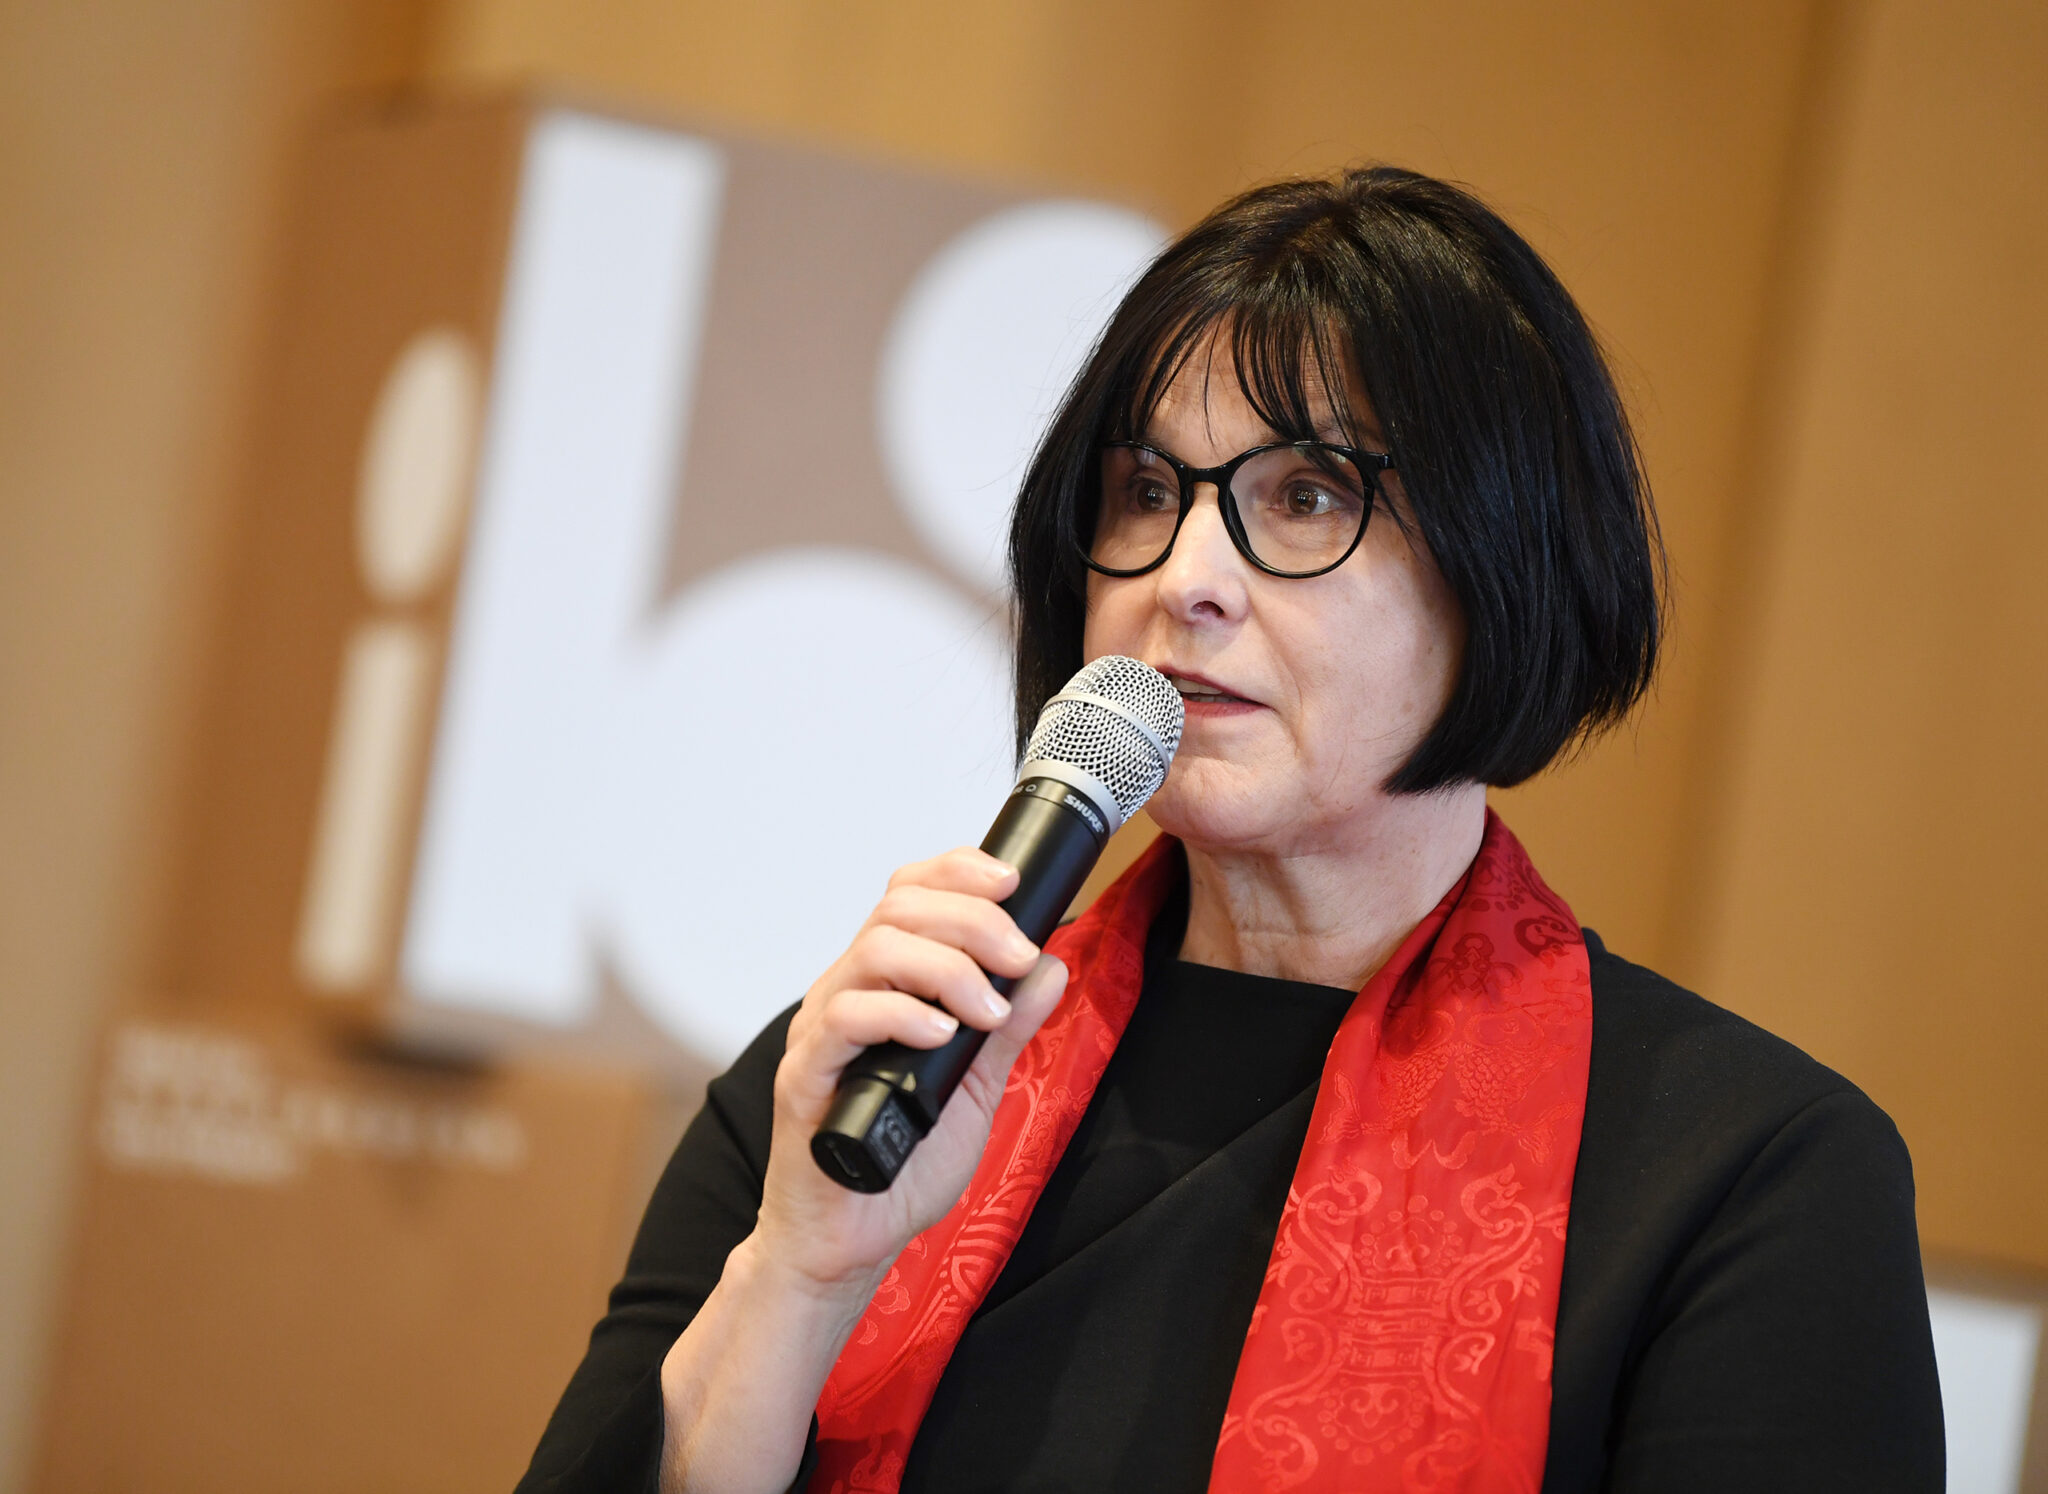 Karin Lang bei der Pressekonferenz. Bild: IBA’27/Kraufmann